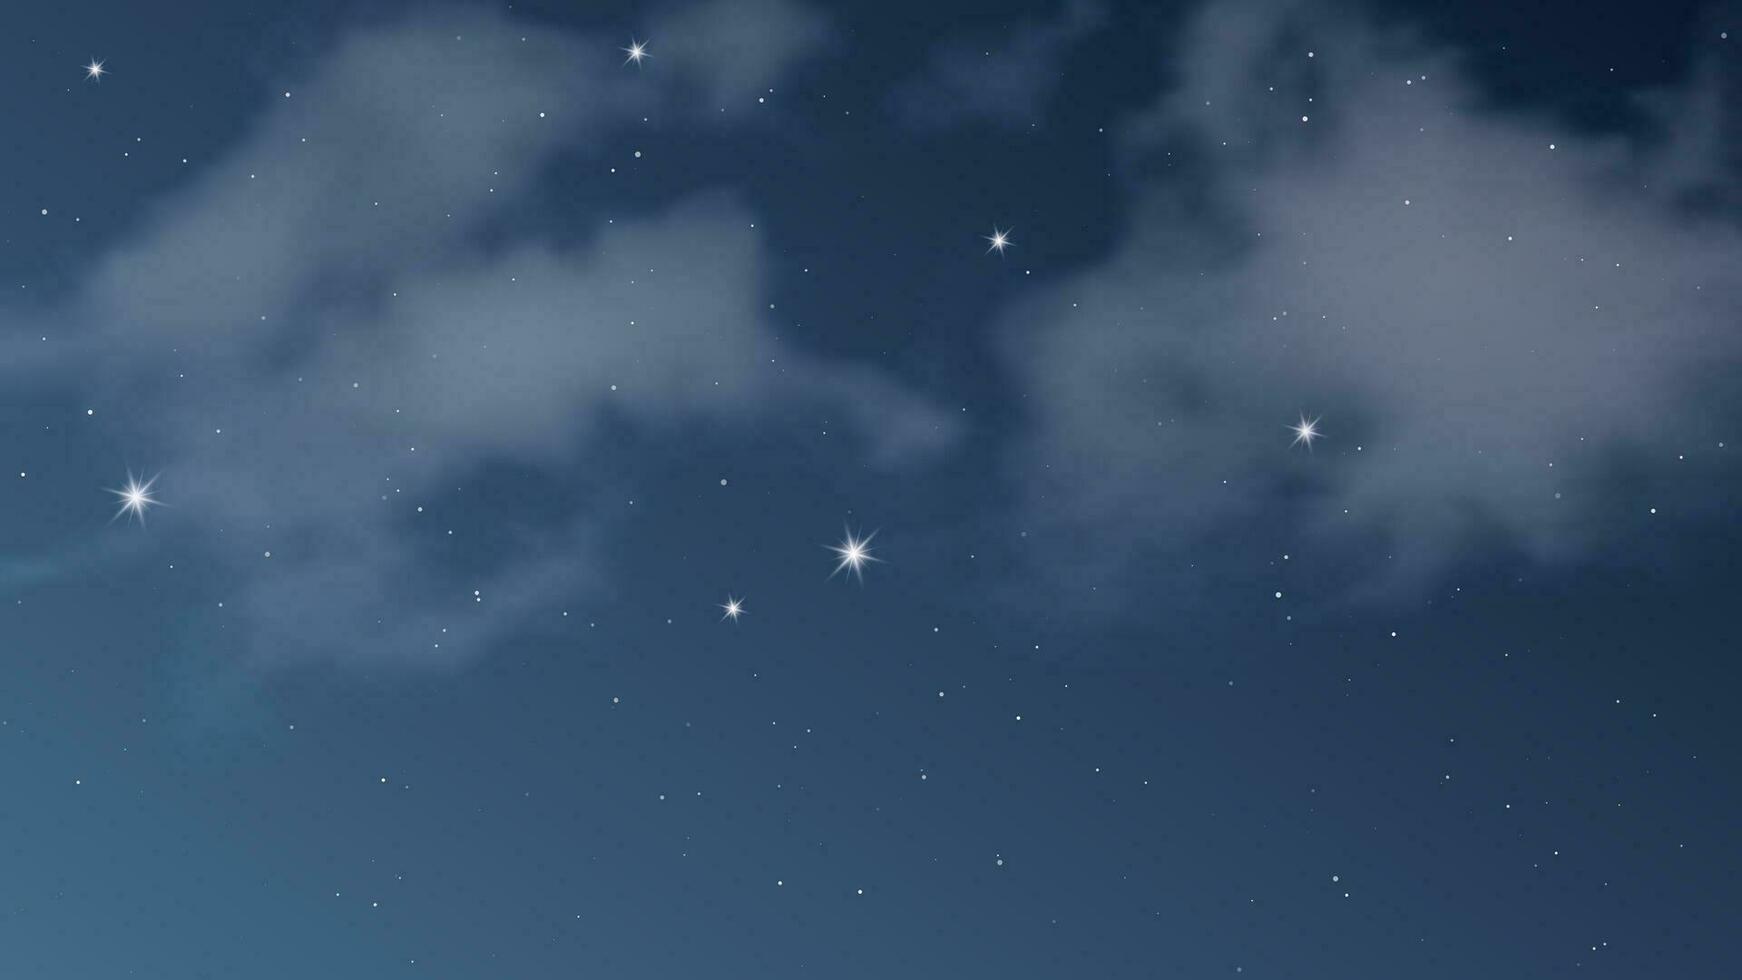 Nachthimmel mit Wolken und vielen Sternen. abstrakter Naturhintergrund mit Sternenstaub im tiefen Universum. Vektor-Illustration. vektor